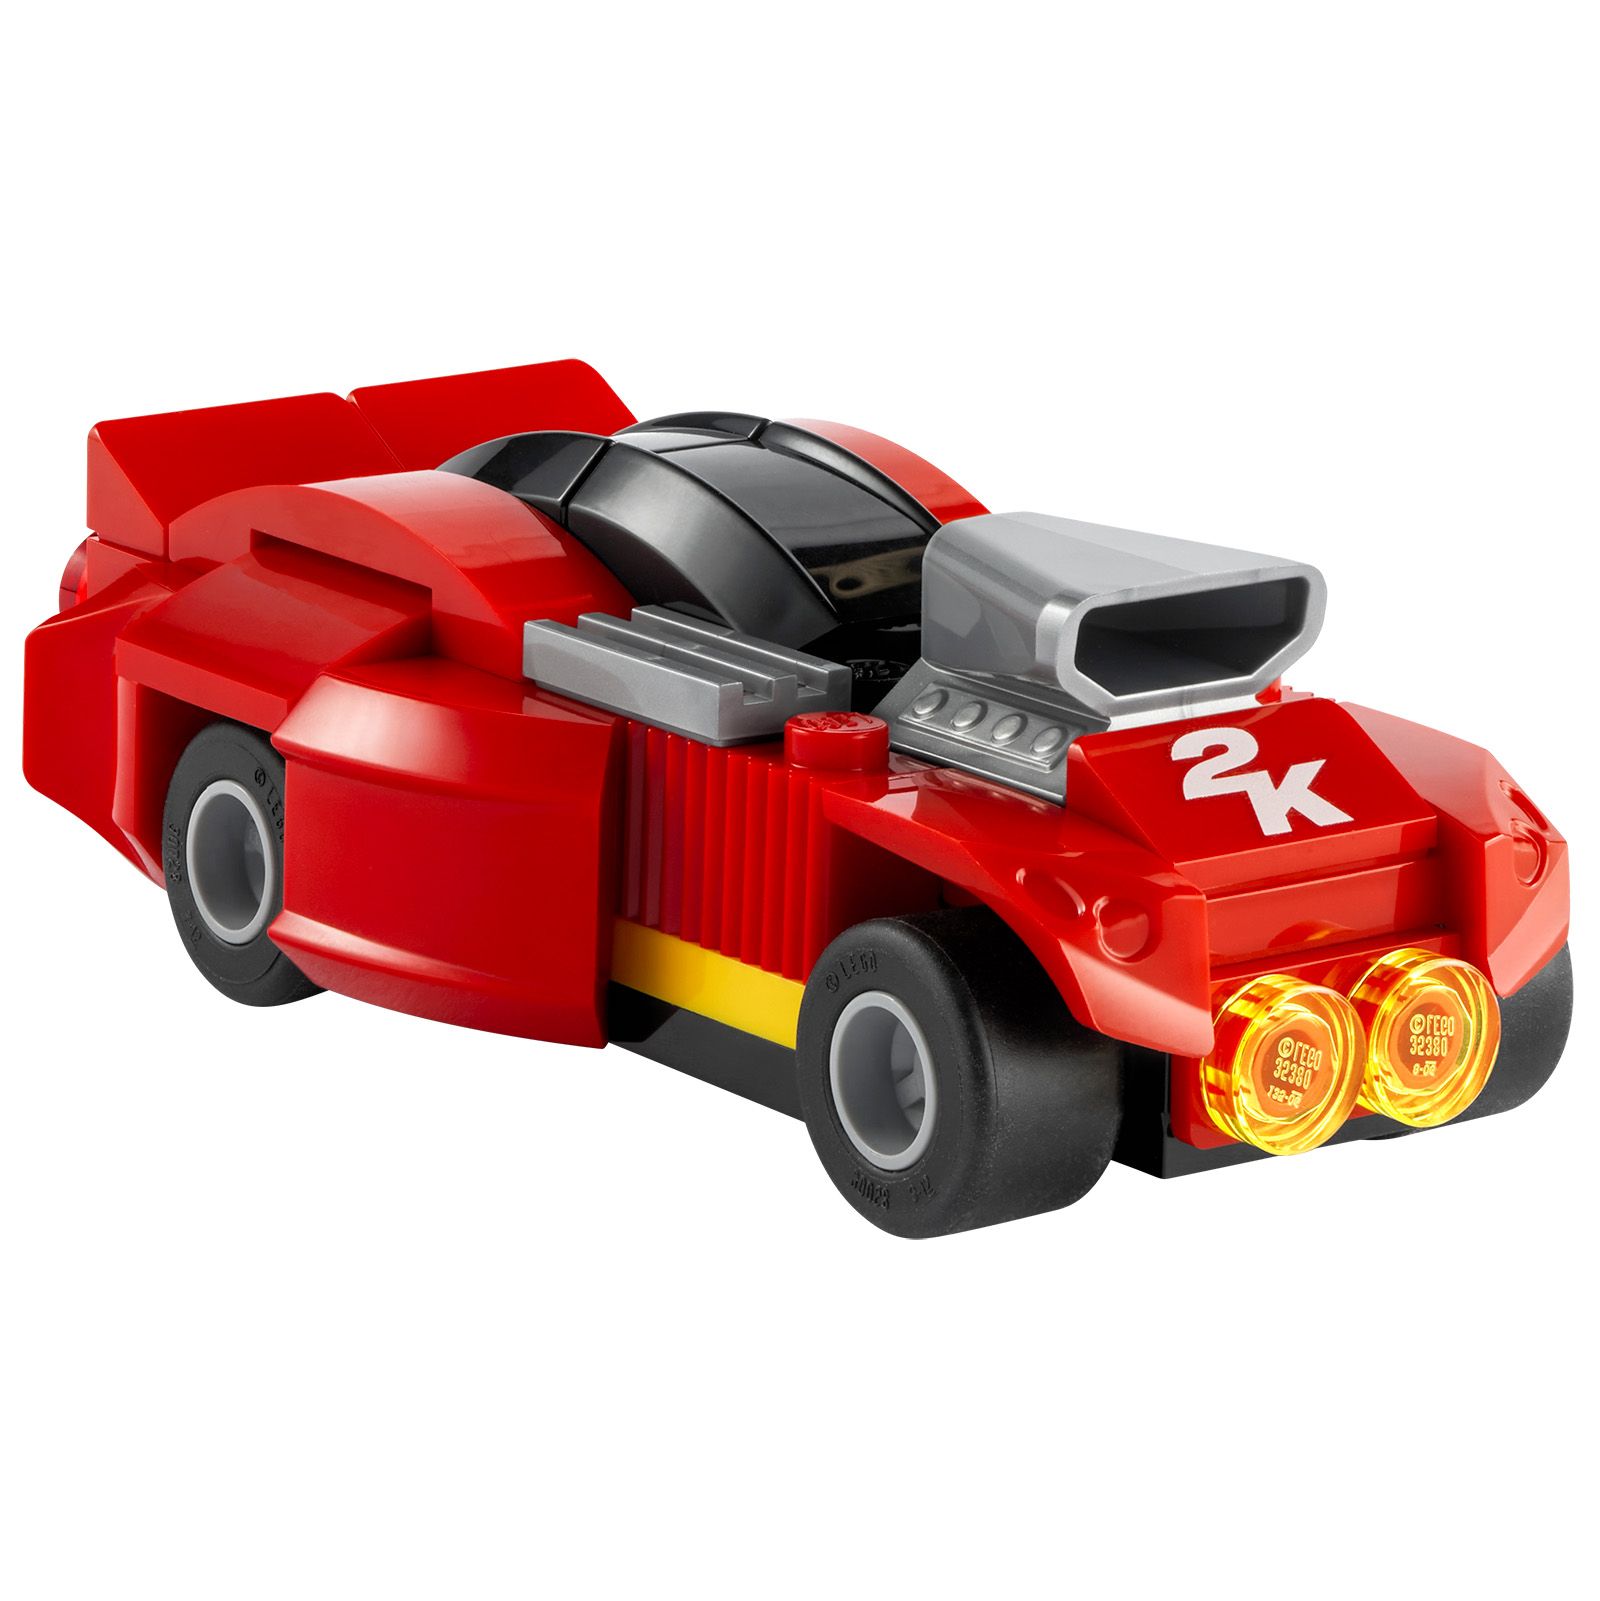 LEGO 2K Drive: un trailer e un prodotto LEGO offerto con alcune versioni fisiche del videogioco